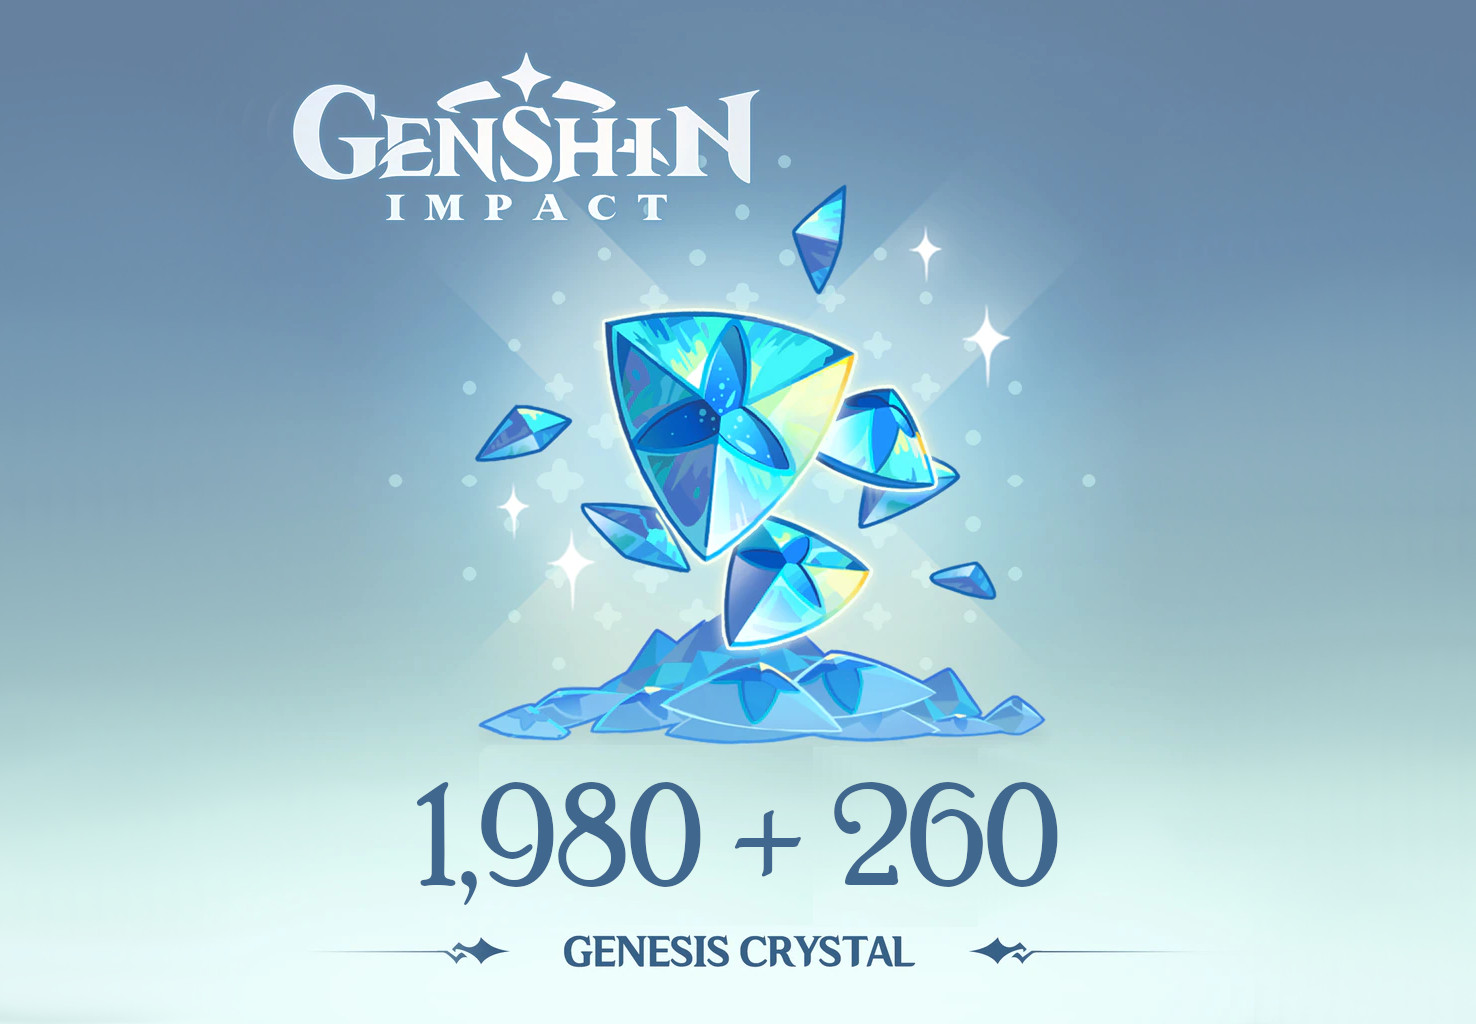 Genshin Impact - 1,980 + 260 Genesis Crystals Reidos Voucher (33.9$)